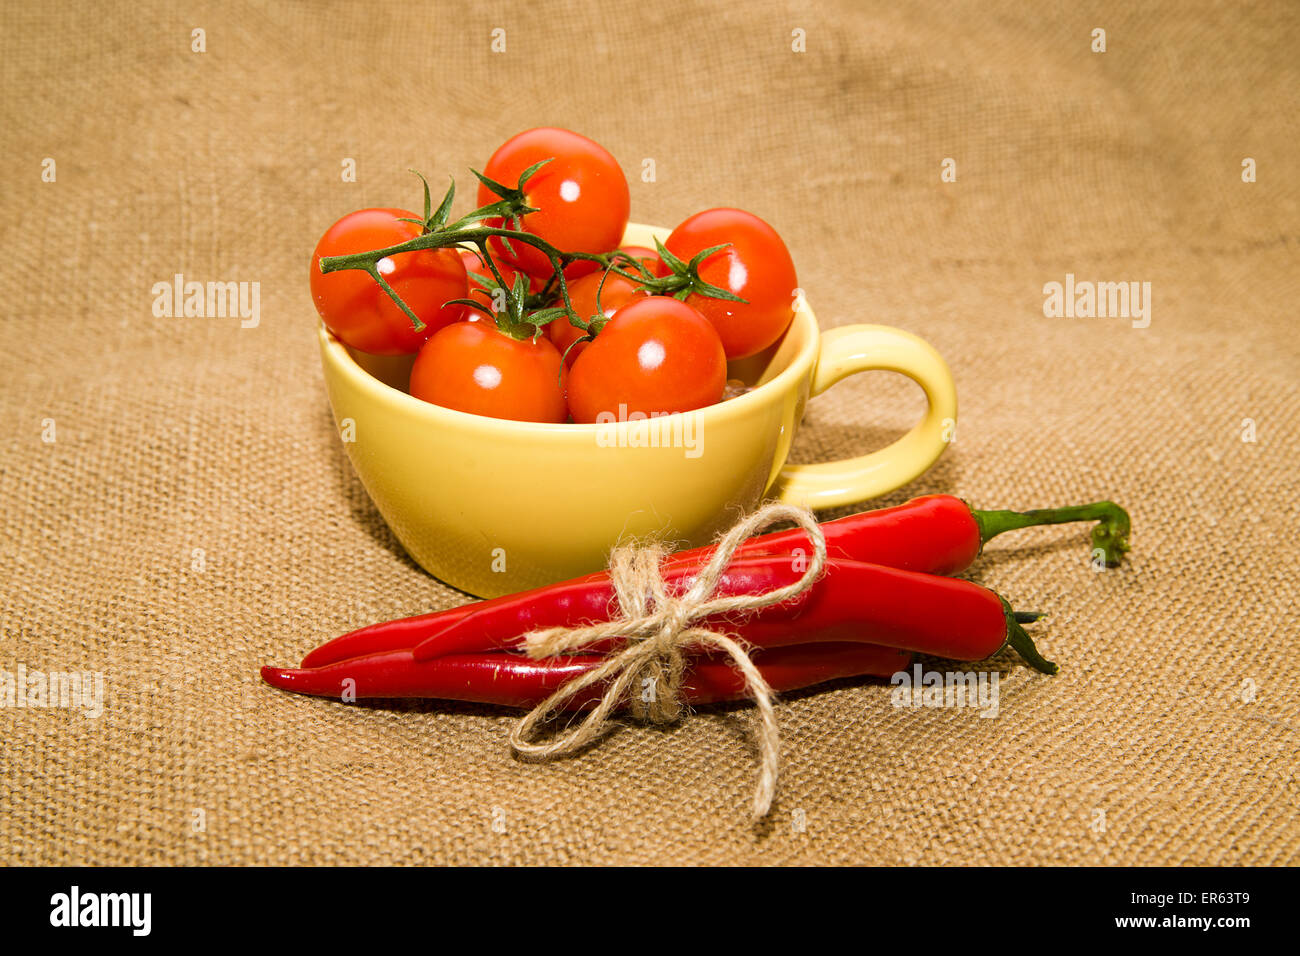 Pomodori ciliegia in una tazza di colore giallo e i peperoncini legato con una corda sul panno vecchio Foto Stock